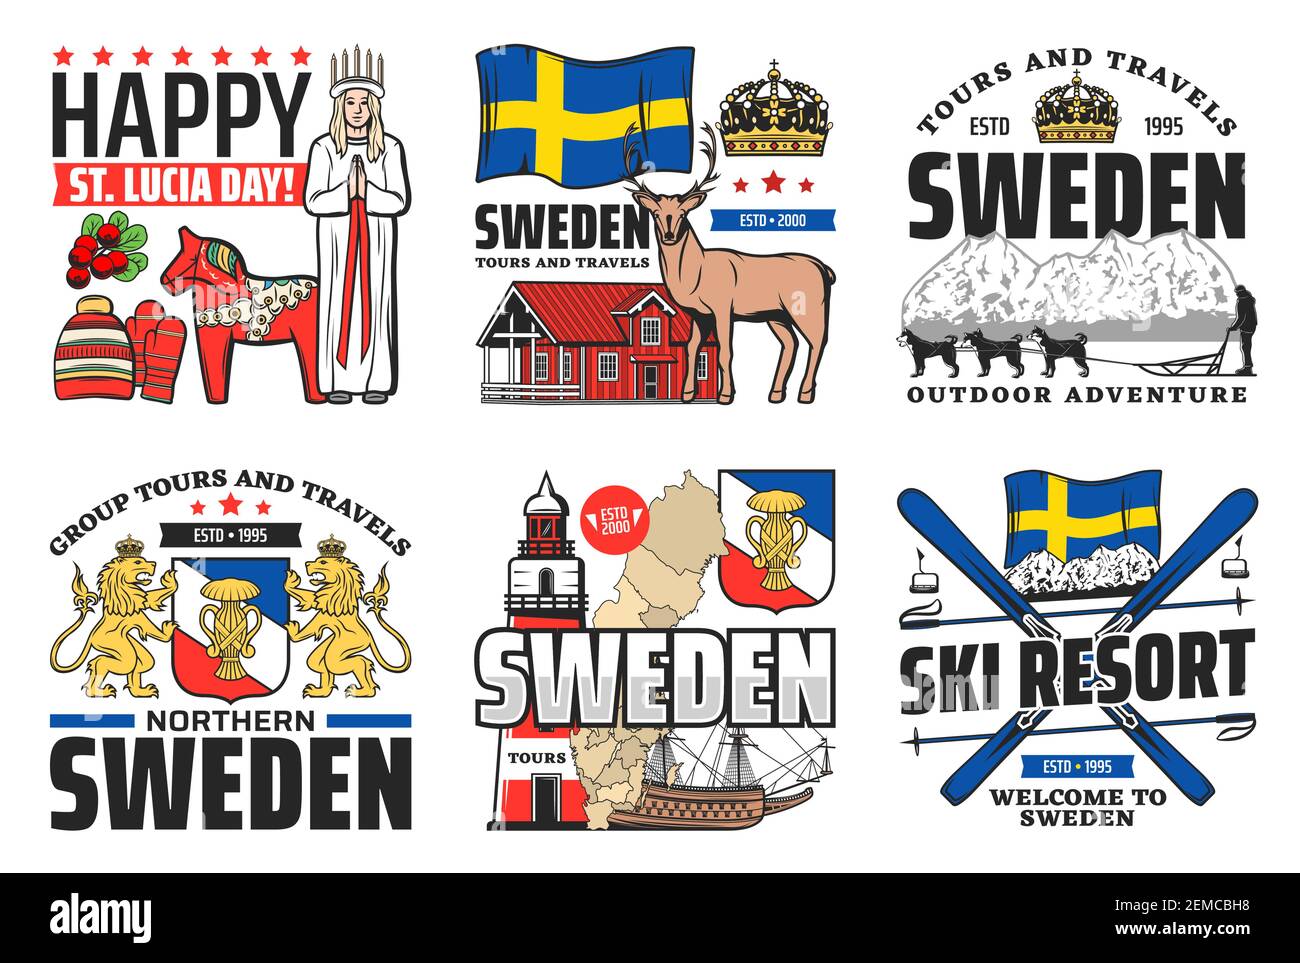 Icone svedesi, viaggi, vacanze e cultura svedese, monumenti storici vettoriali di Stoccolma e simbolo del cavallo. Benvenuti a bandiera svedese, stazione sciistica e Natale St Lu Illustrazione Vettoriale